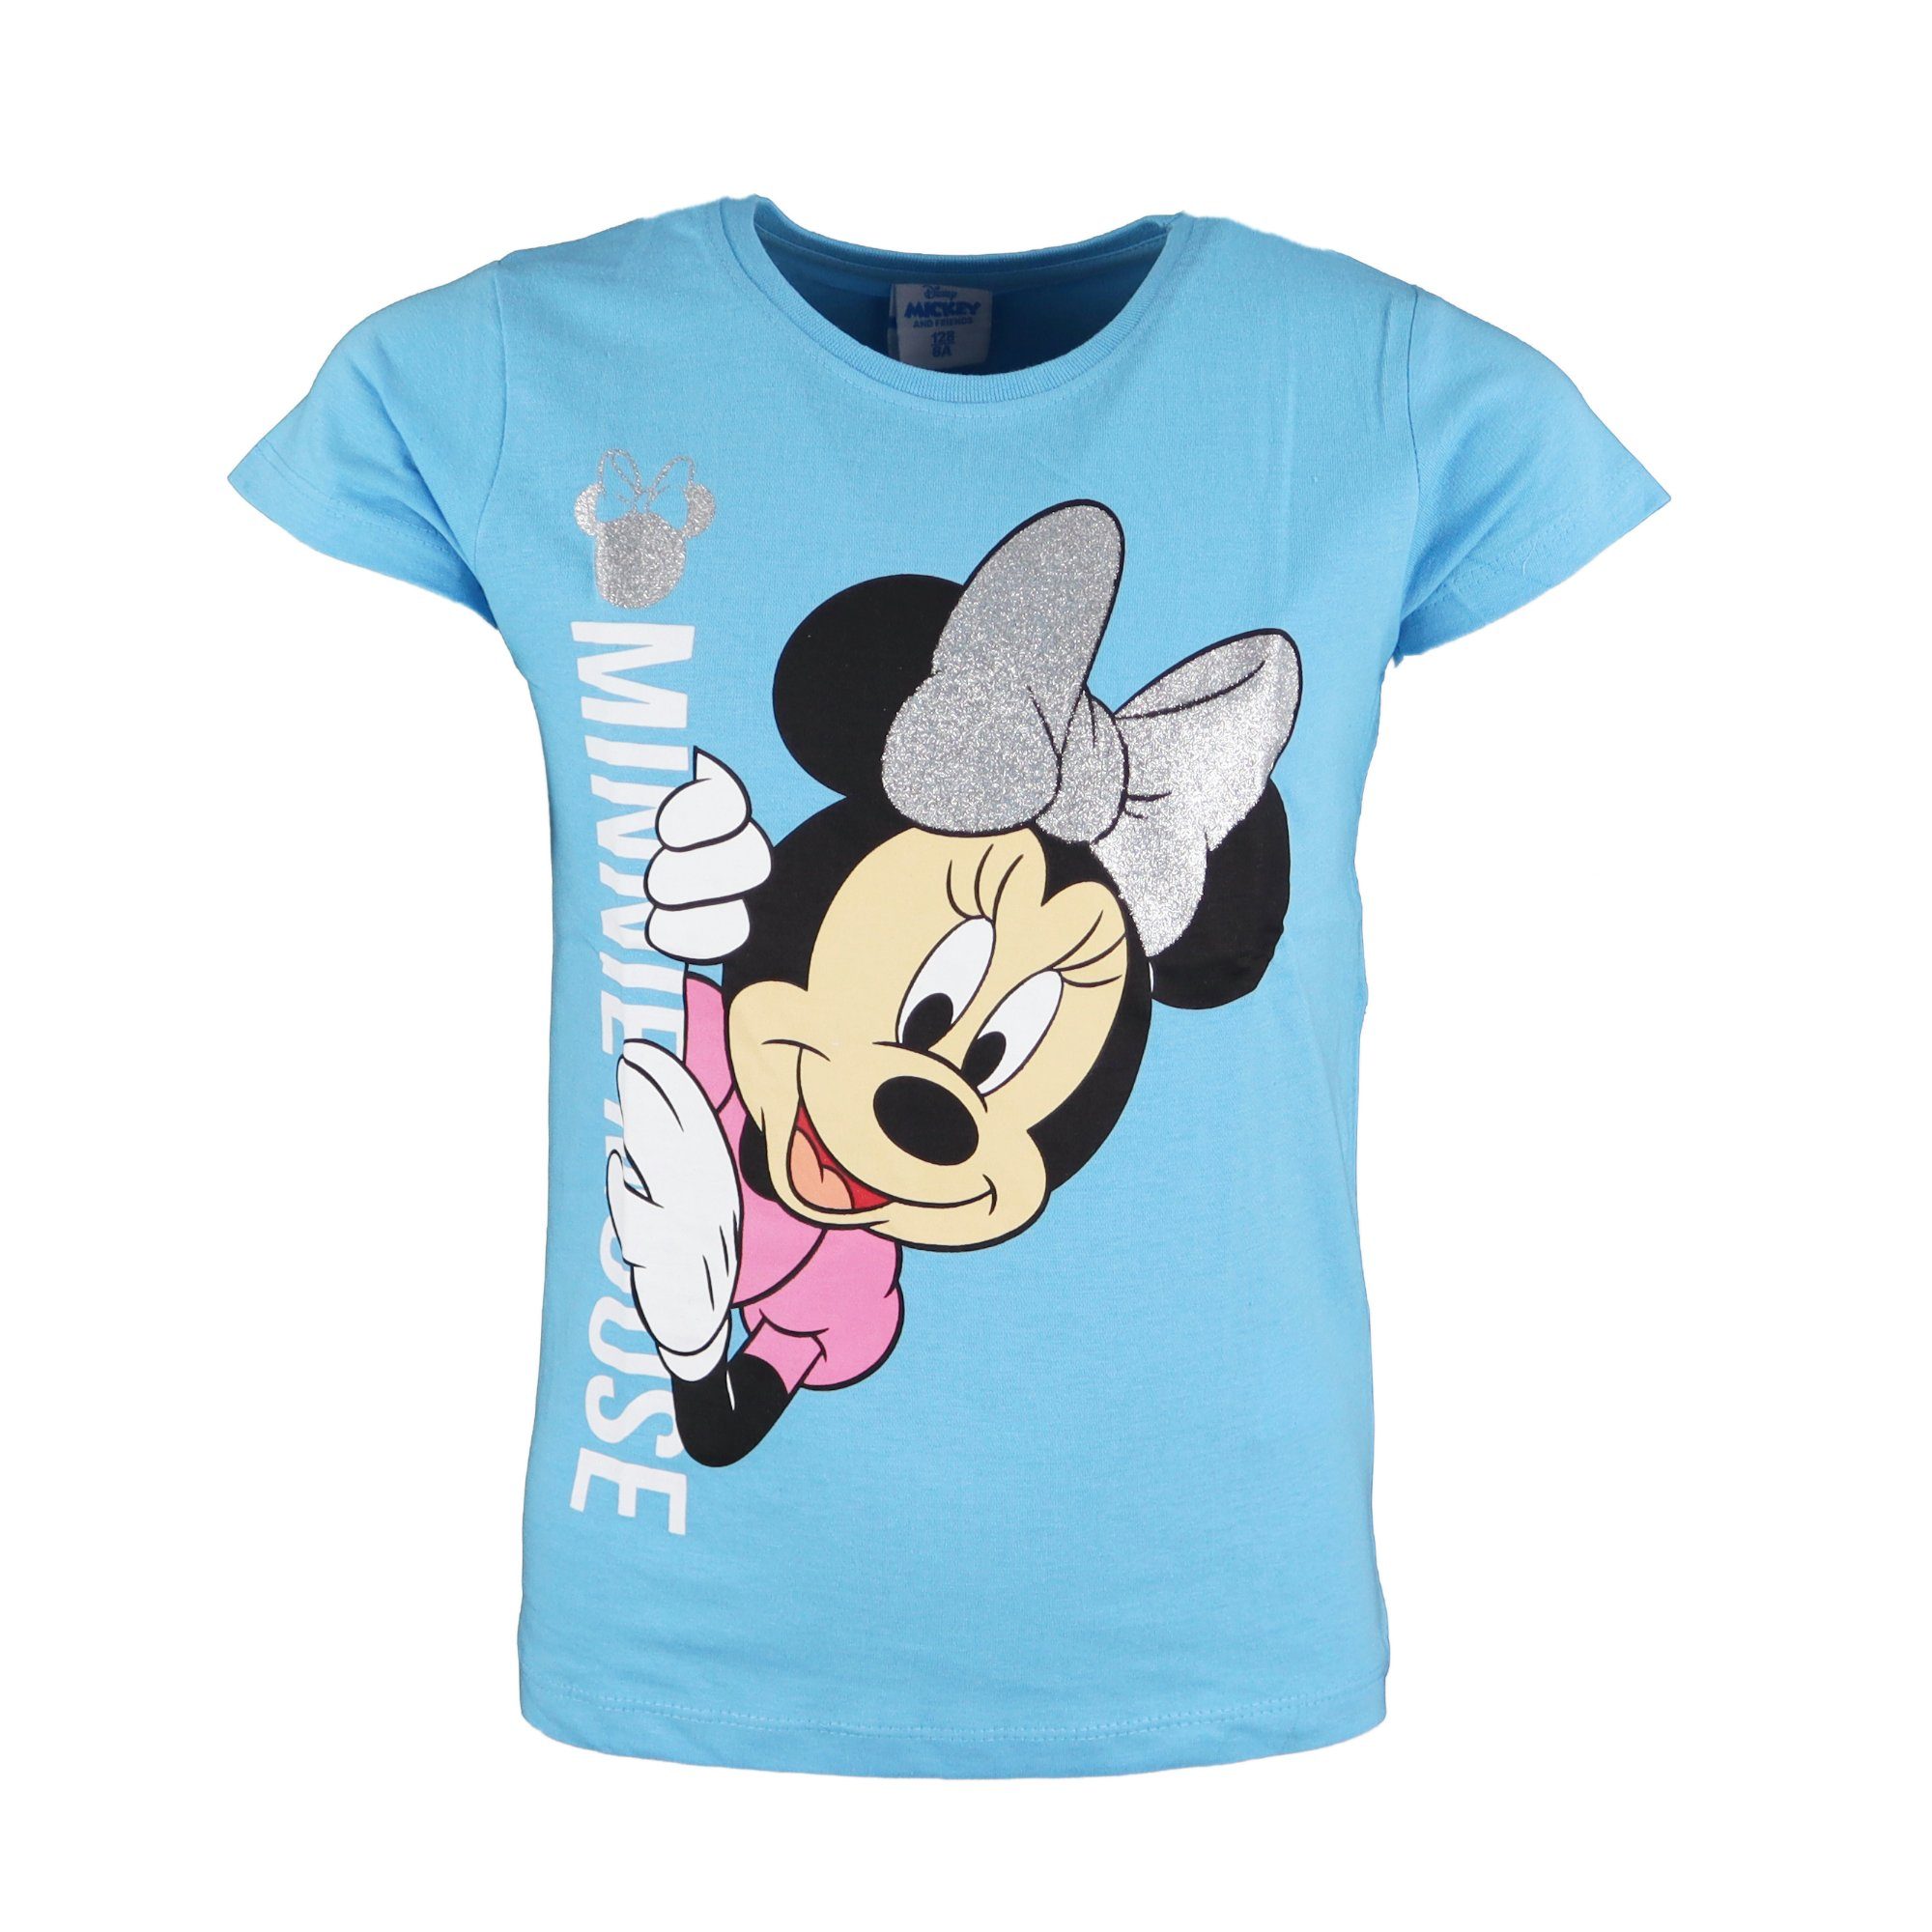 Disney Minnie Mouse T-Shirt Minnie Maus Mädchen Kinder Shirt Gr. 104 bis 134, 100% Baumwolle Blau